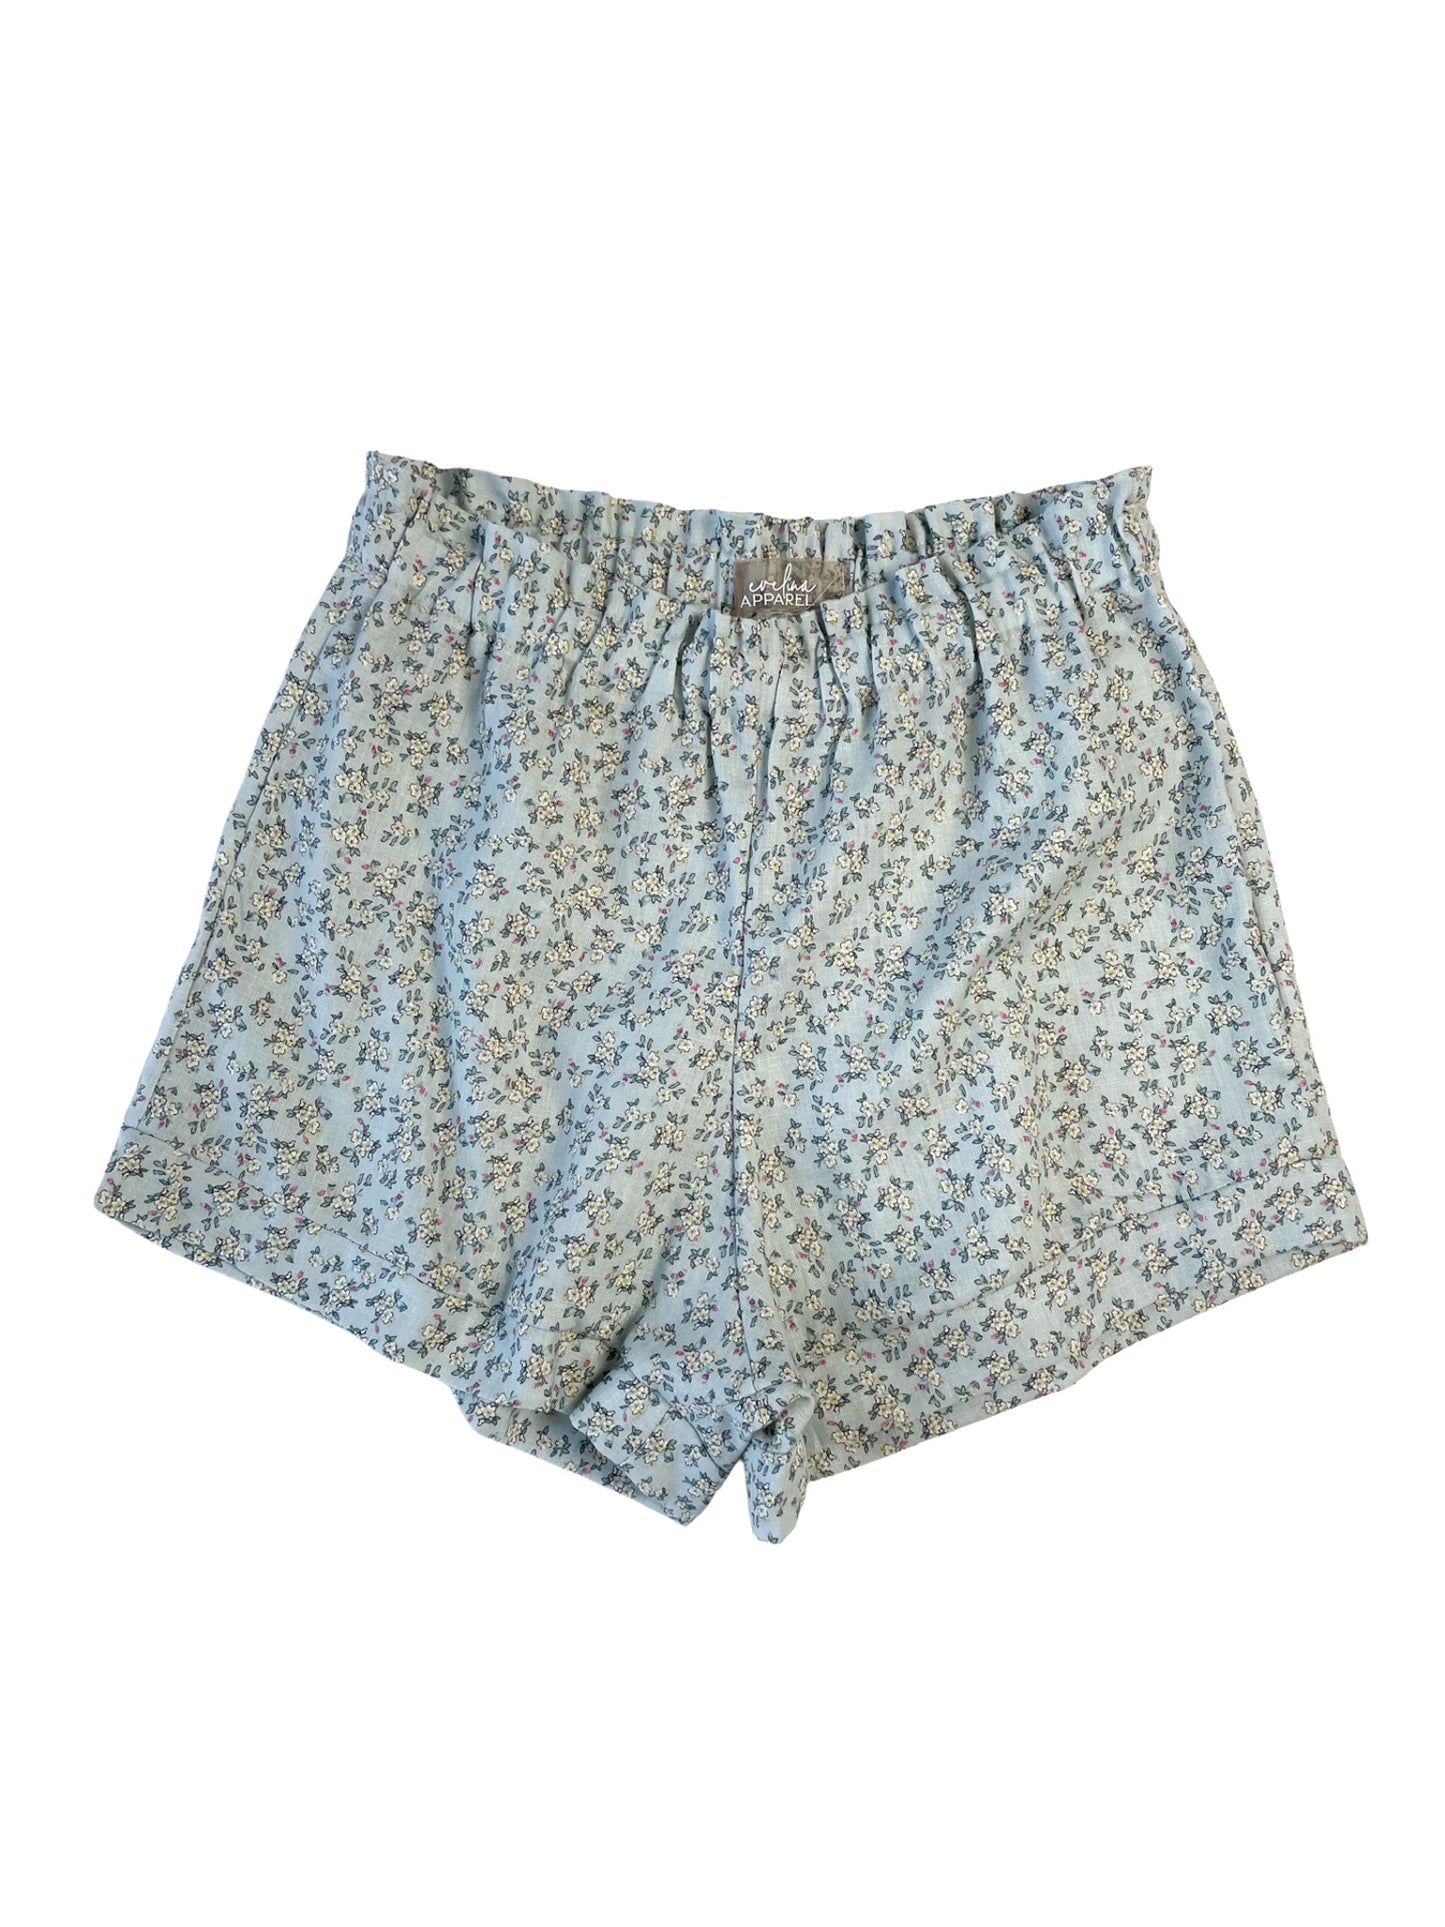 Linen ruffle shorts / mint